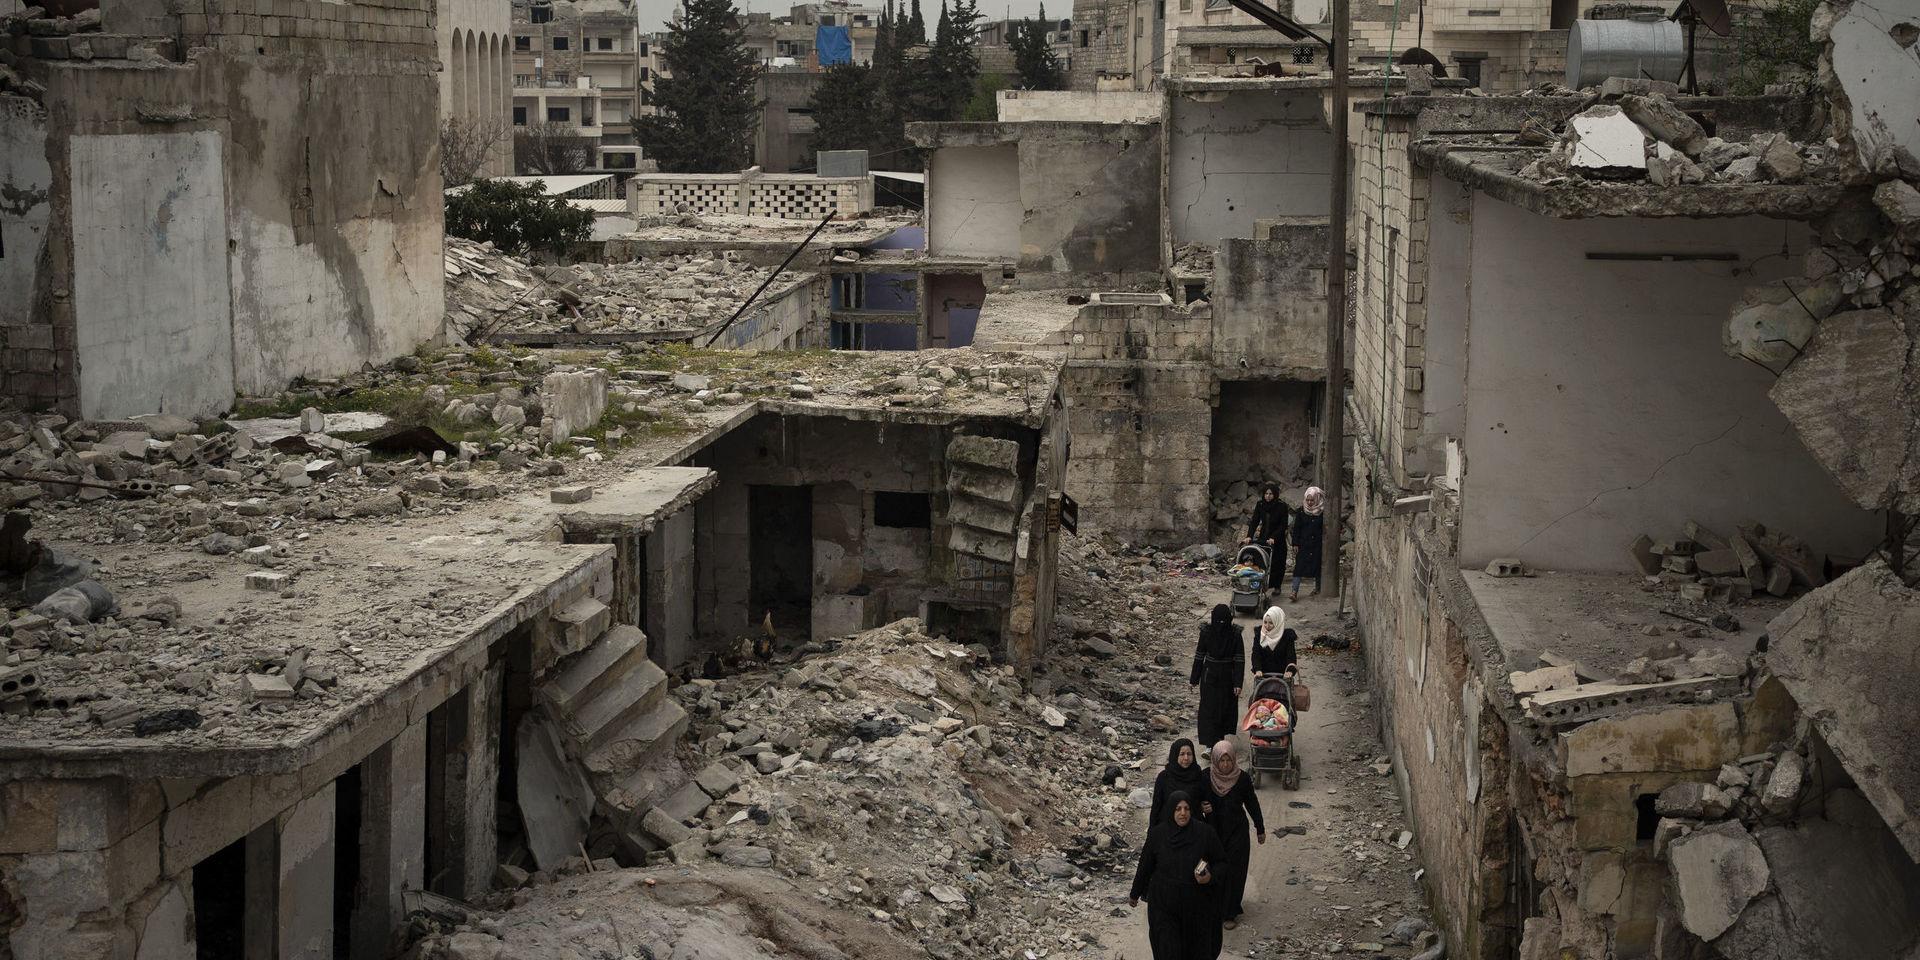 Stora delar av Syrien ligger i spillror efter åratal av krig. Bilden är tagen i staden Idlib den 12 mars. Hjälporganisationer och experter oroar sig över landets förmåga att hantera coronaviruset.